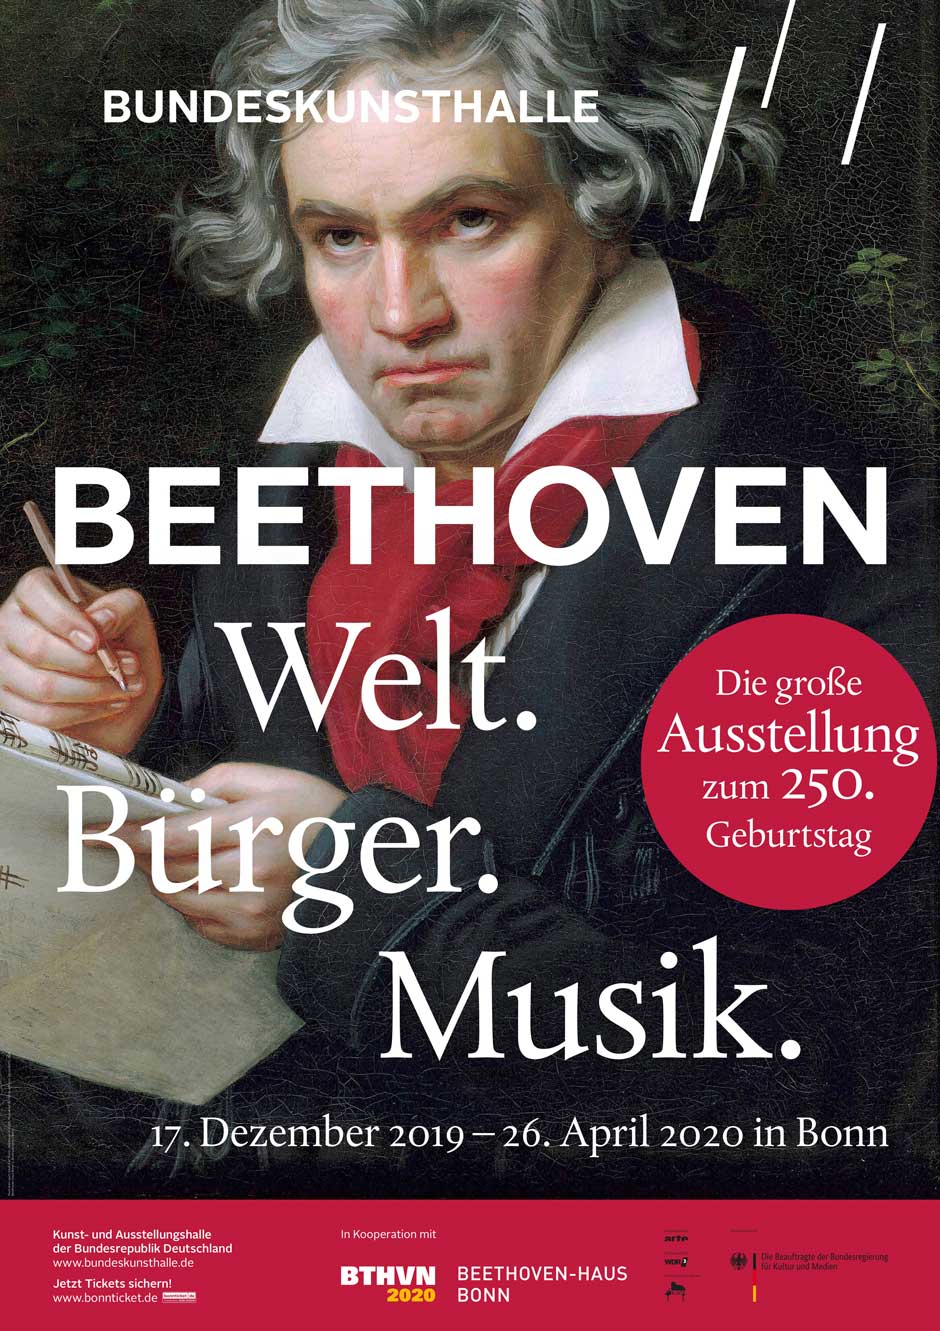 La Bundeskunsthalle de Bonn celebra el 250º aniversario del nacimiento de Beethoven con la exposición multidisciplinar "BEETHOVEN. World.Citizen.Music". | Tu Gran Viaje a la Alemania de Beethoven | Tu Gran Viaje | Discover Beethoven